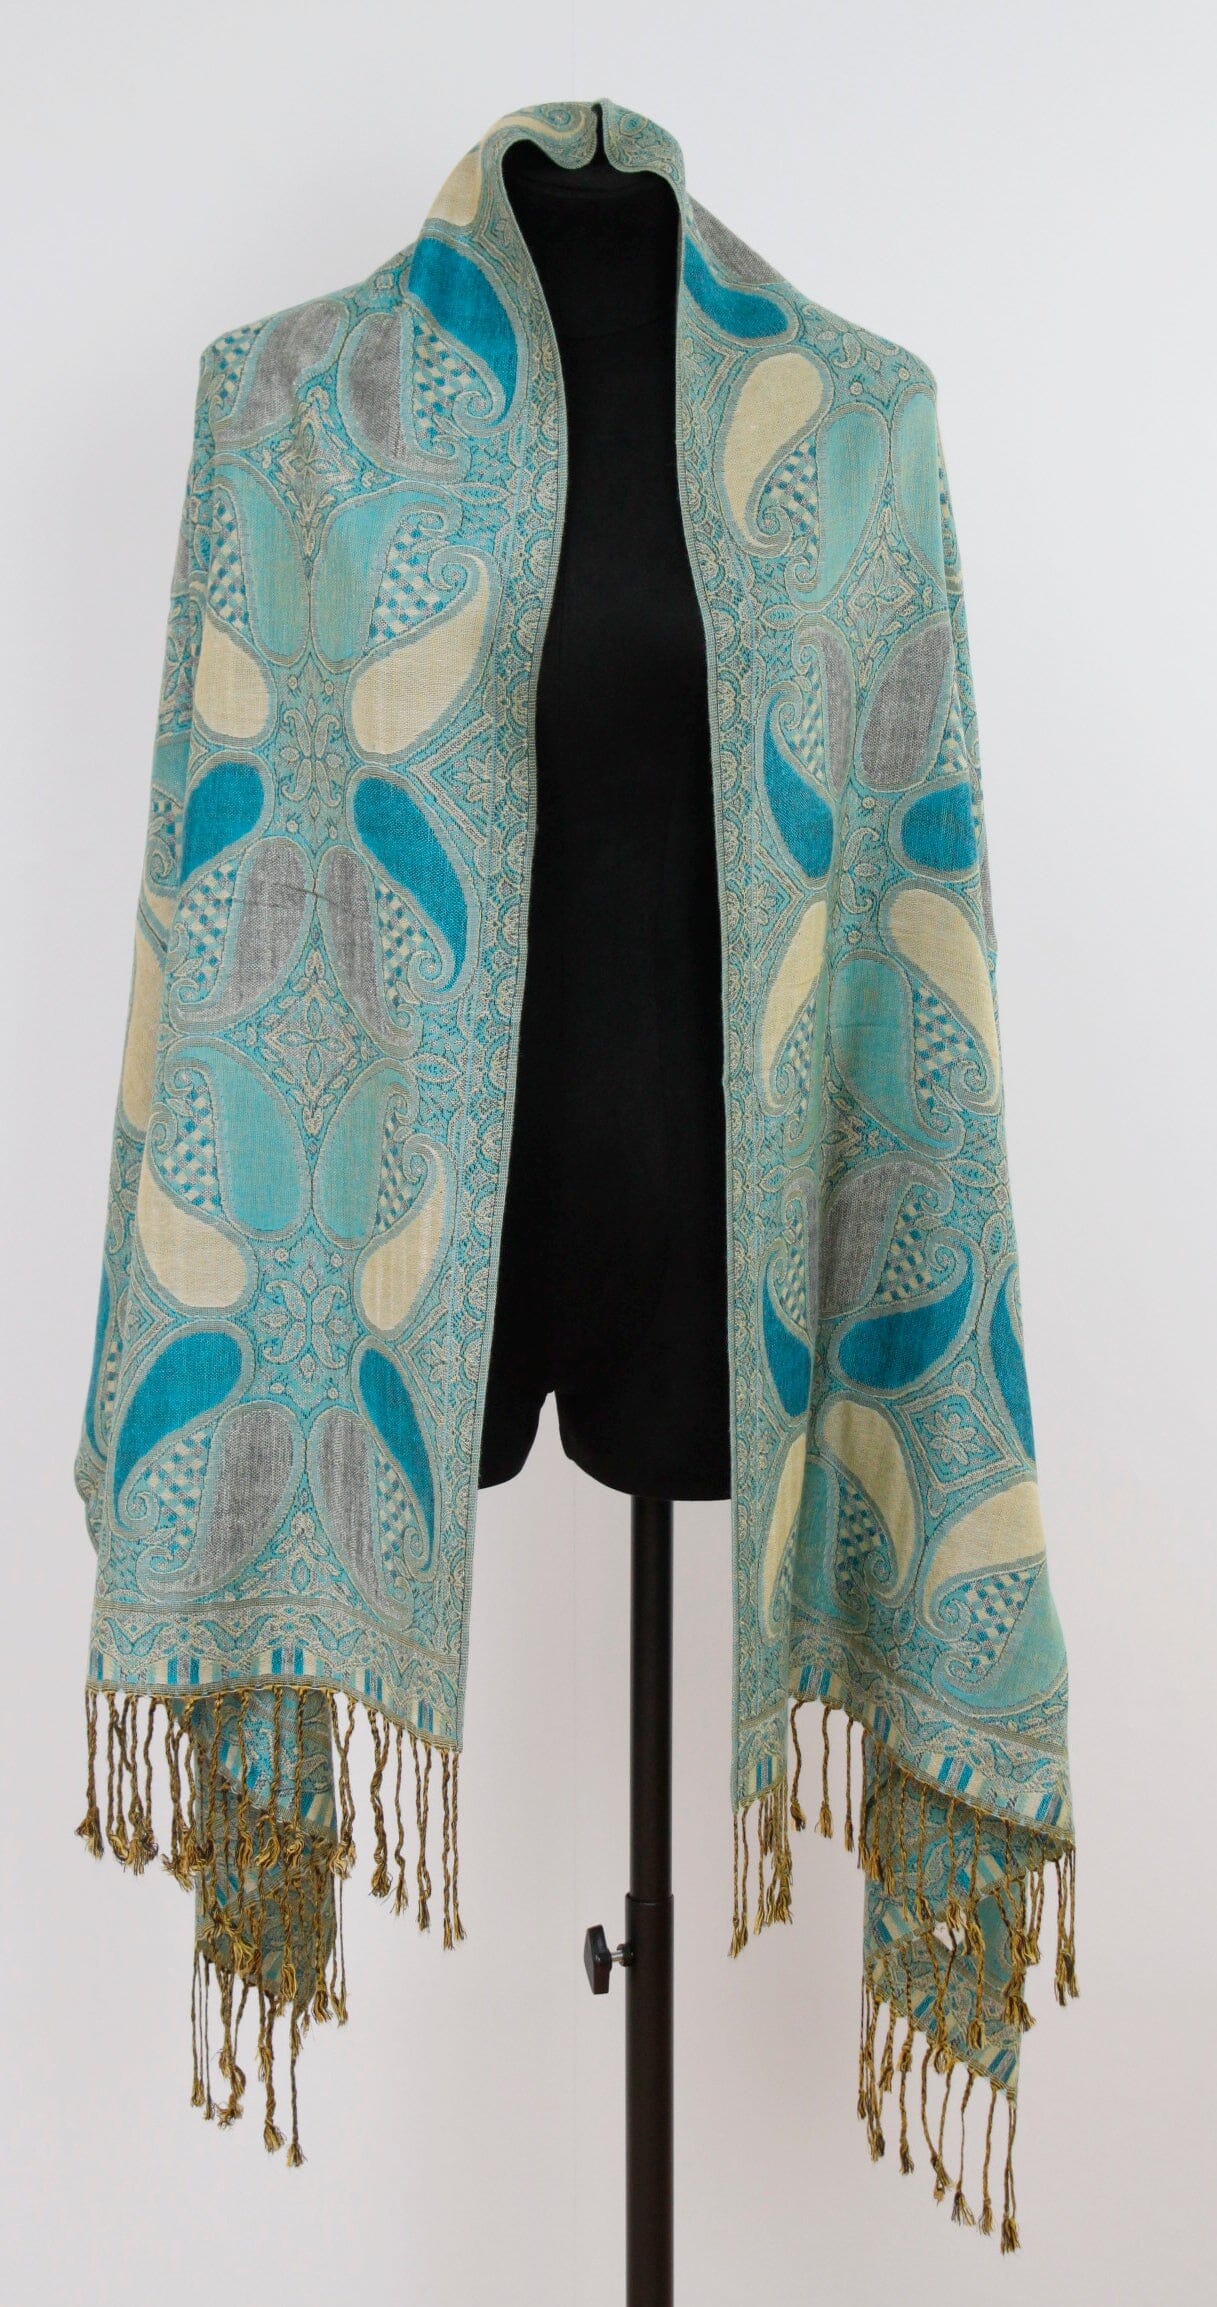 Echarpe Paisley Turquoise foulard 